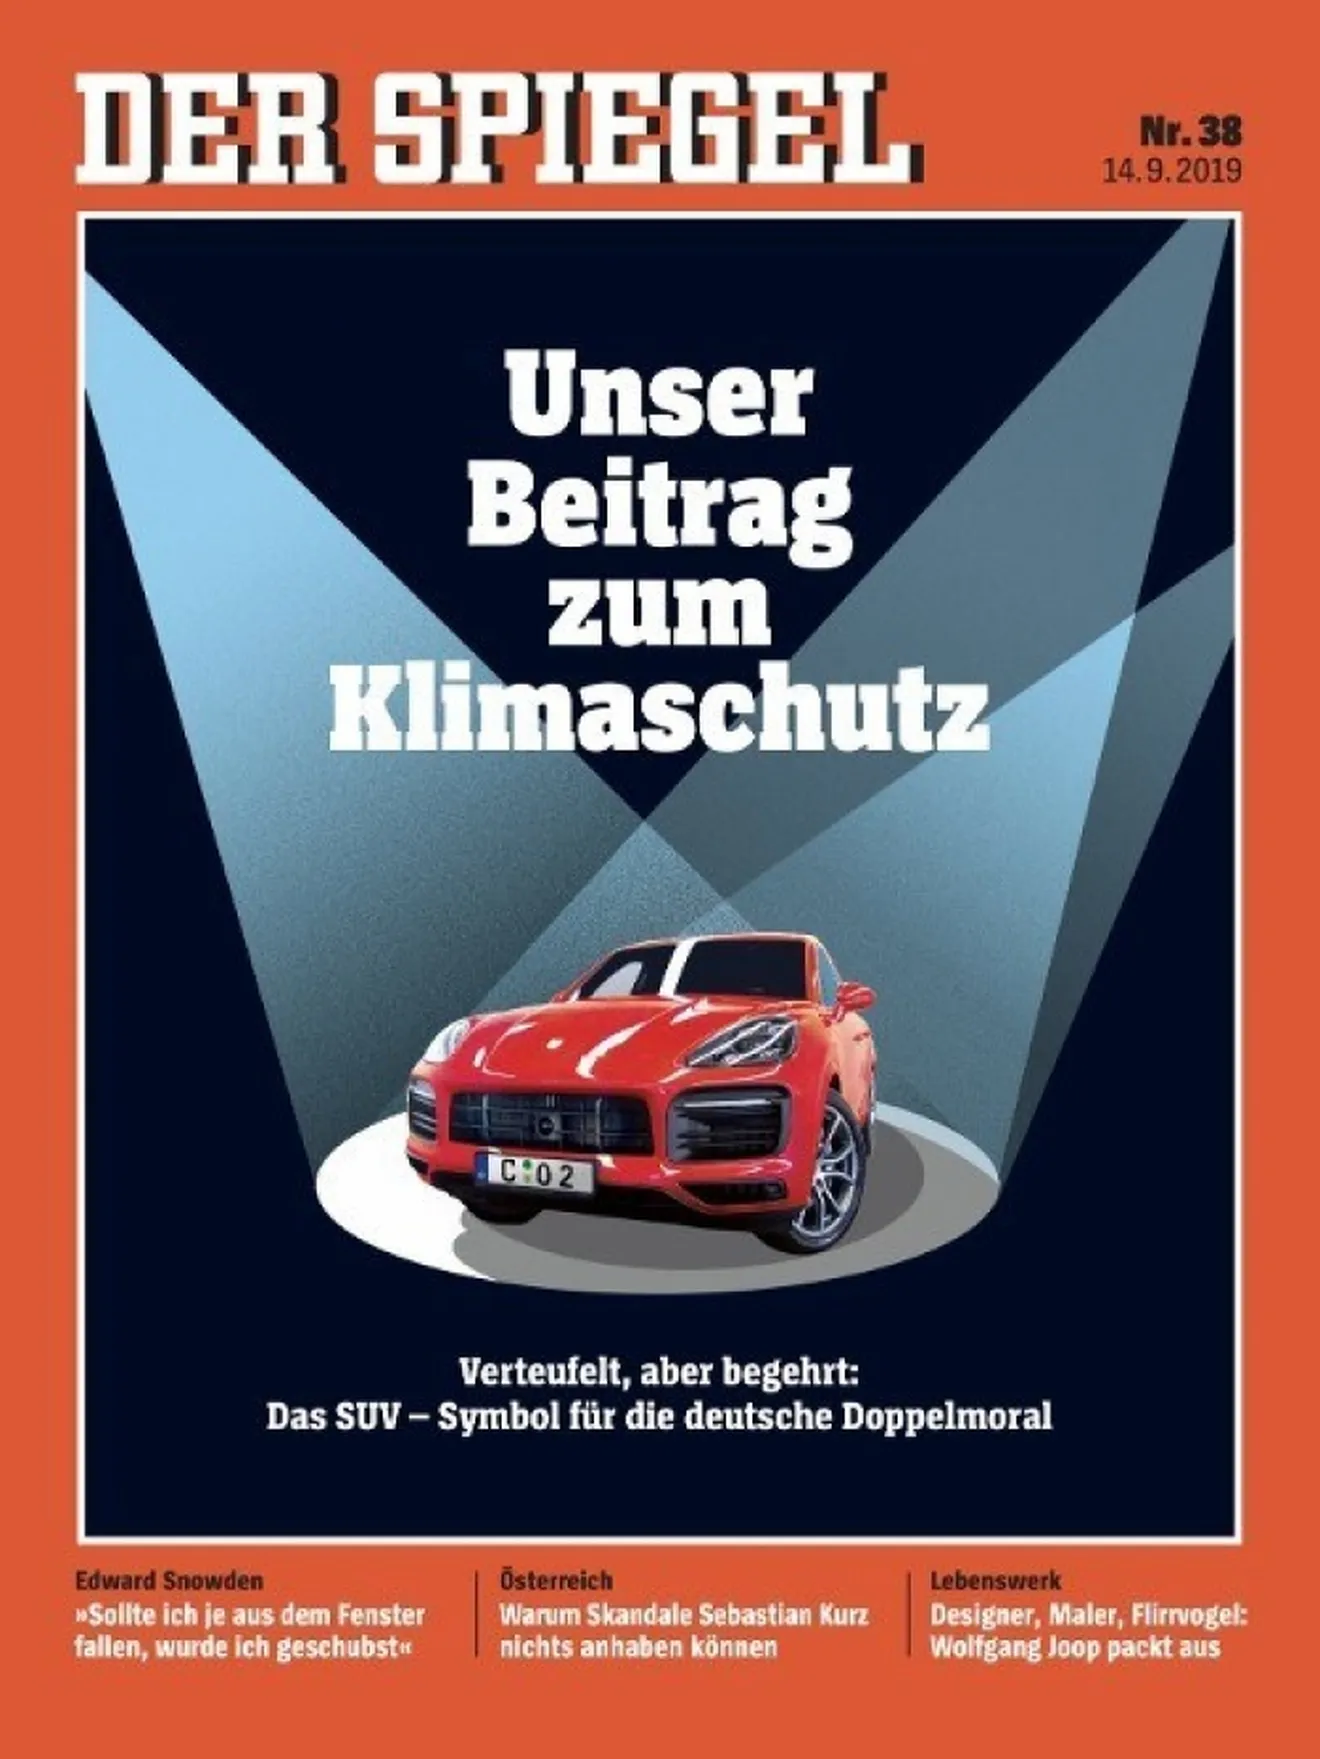 La industria alemana del motor busca la redención con el coche eléctrico